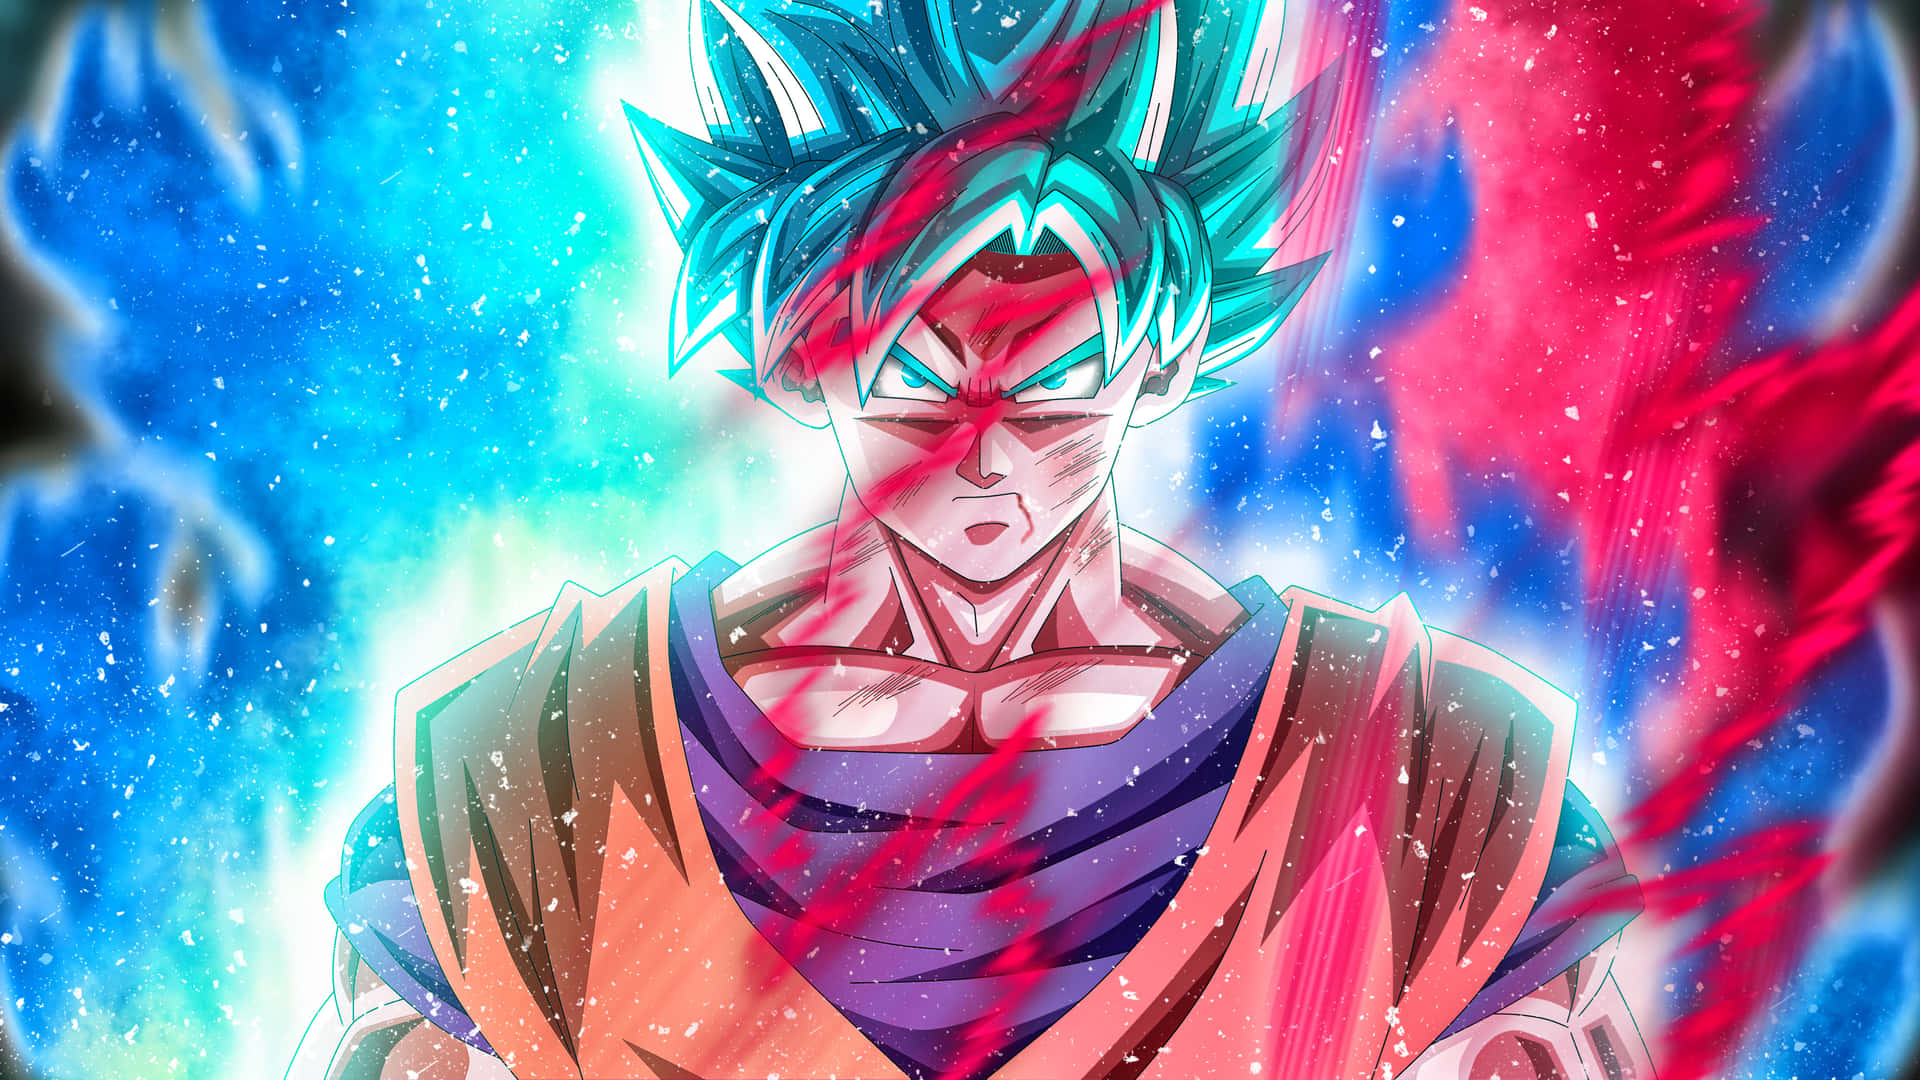 Goku fra den populære anime-serie Dragon Ball, klar til kamp. Wallpaper